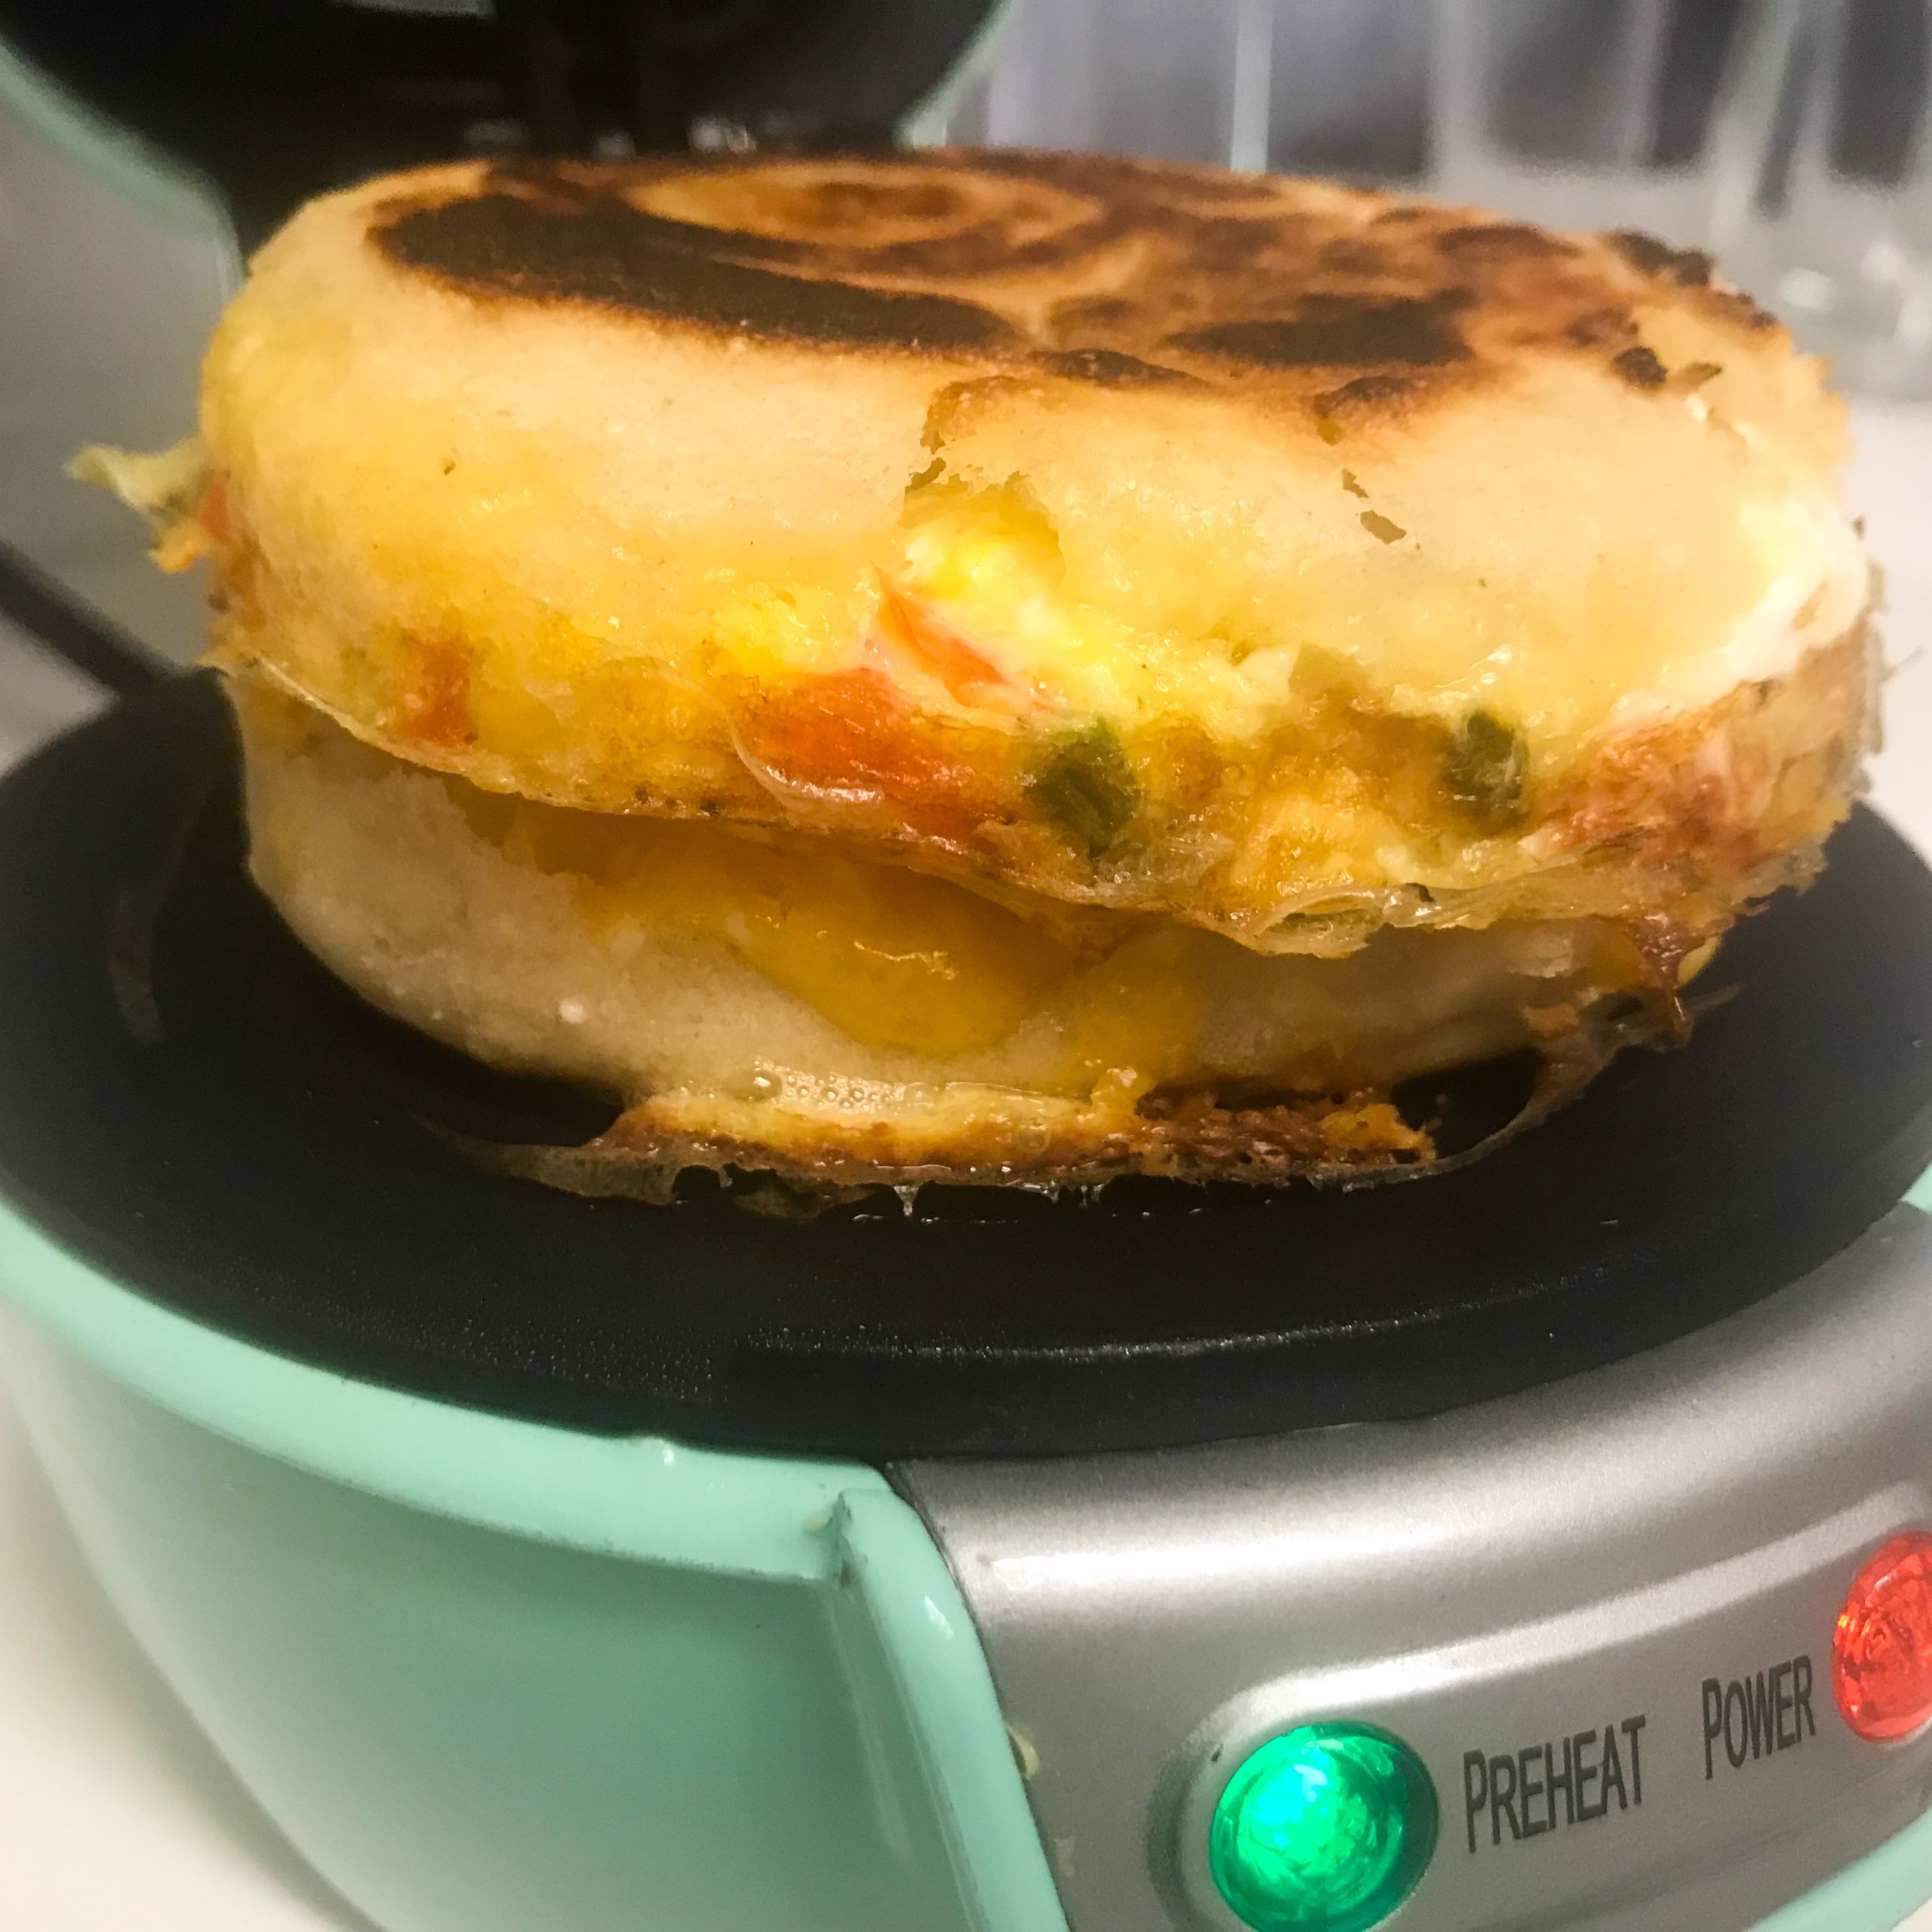 Finished tex-mex breakfast sandwich in the sandwich maker